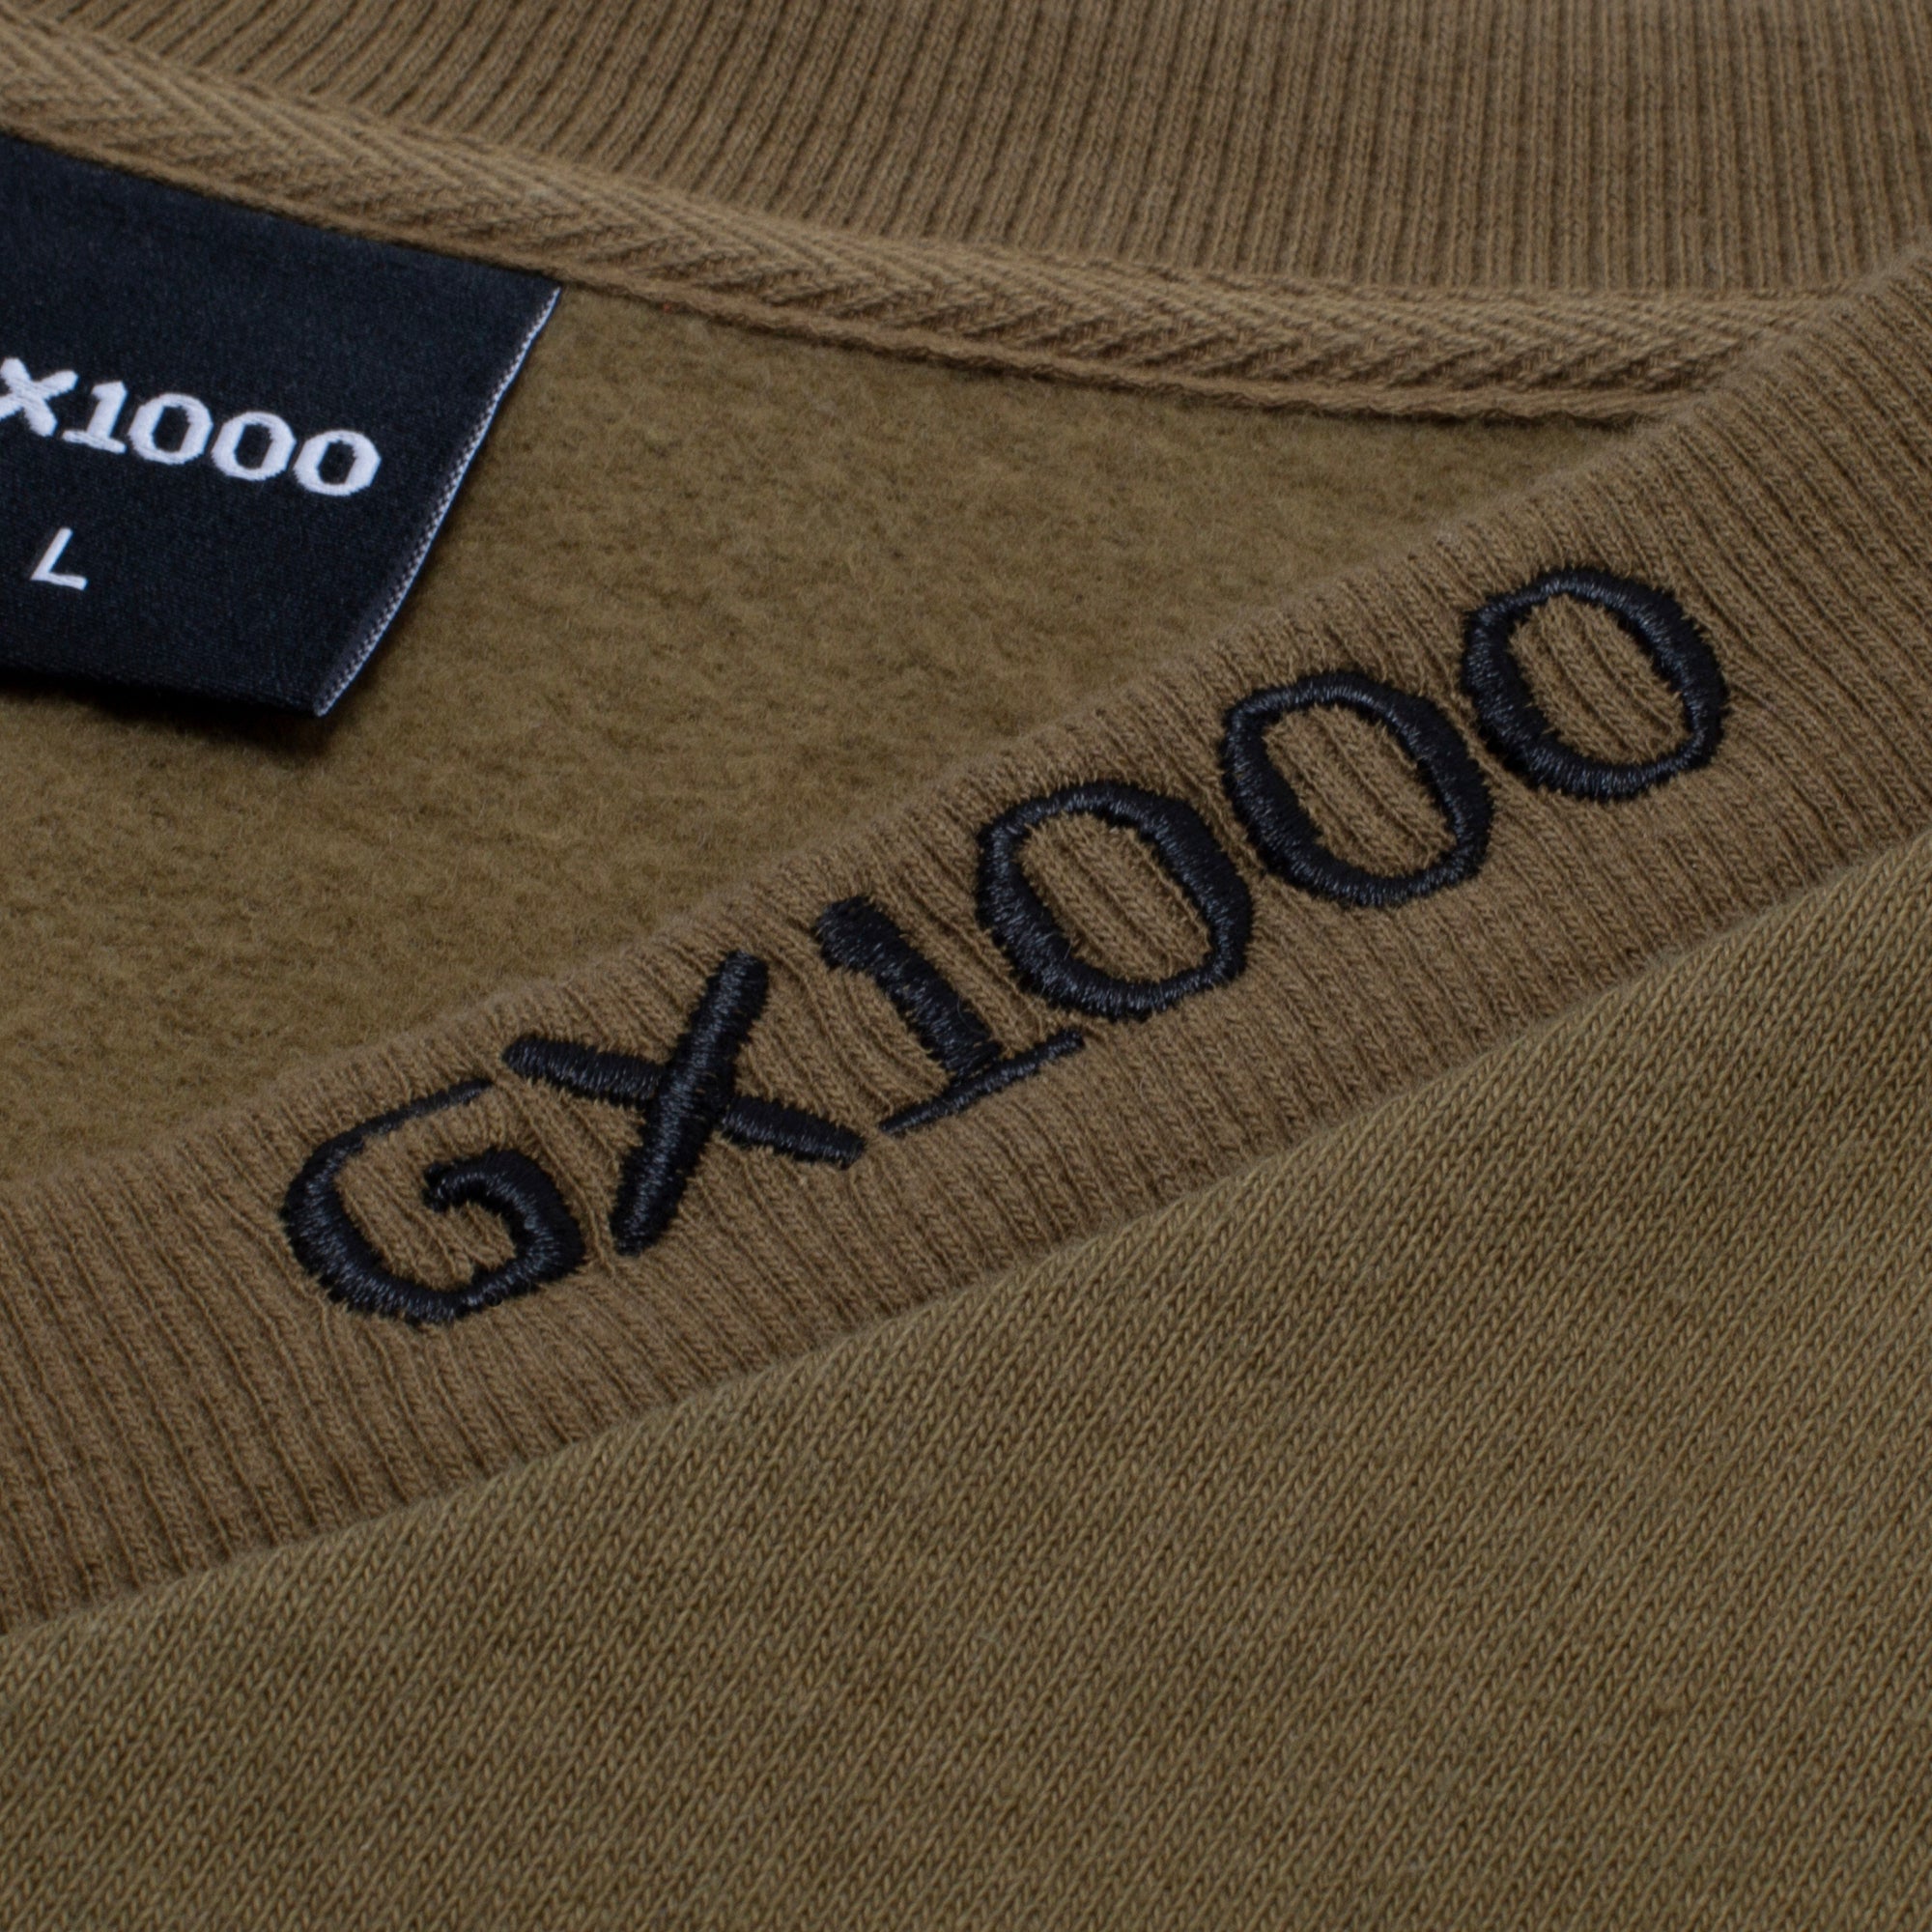 GX1000 - Gino Vest "Olive"